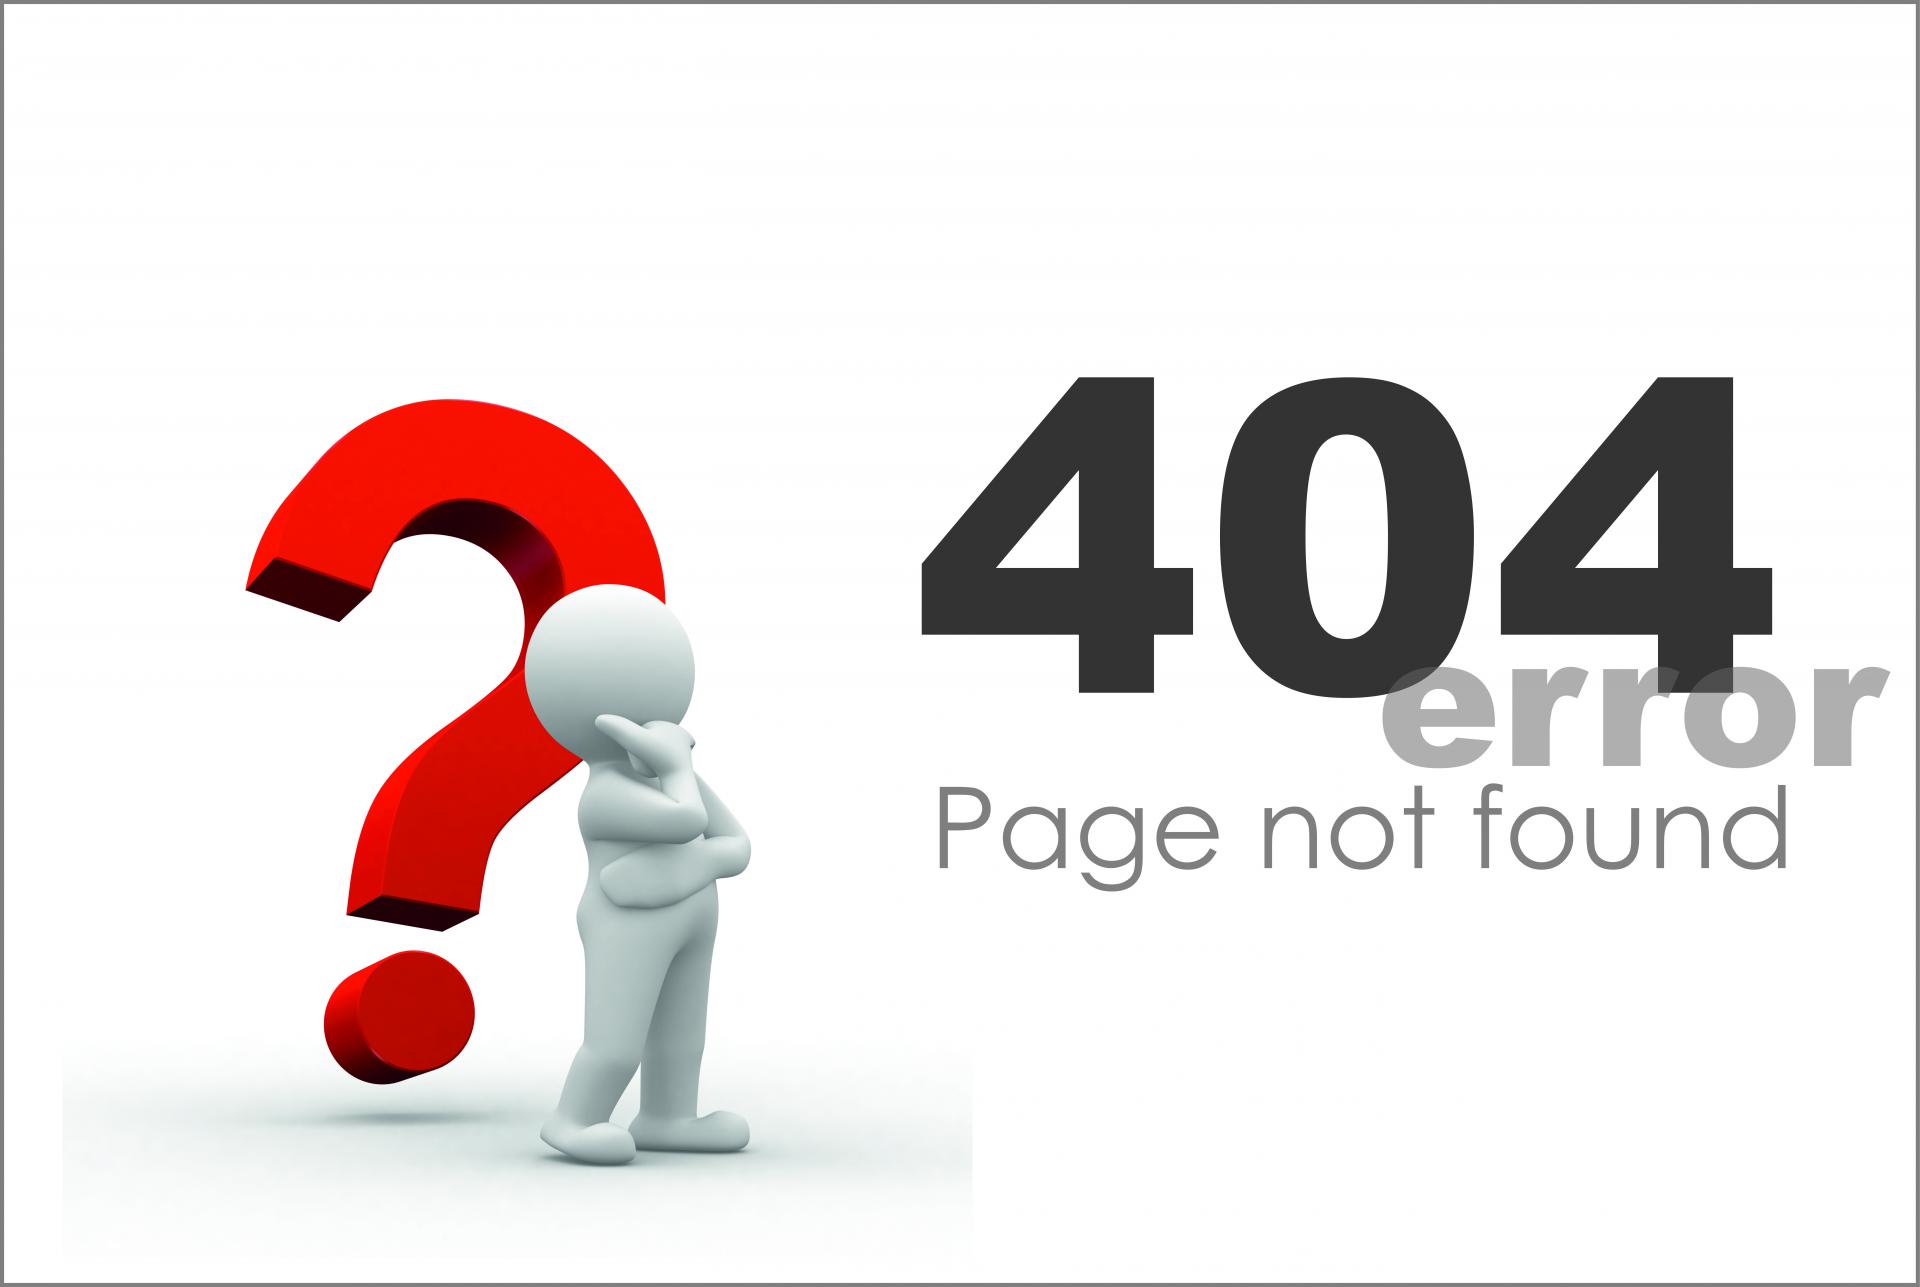 Not Found (404) error